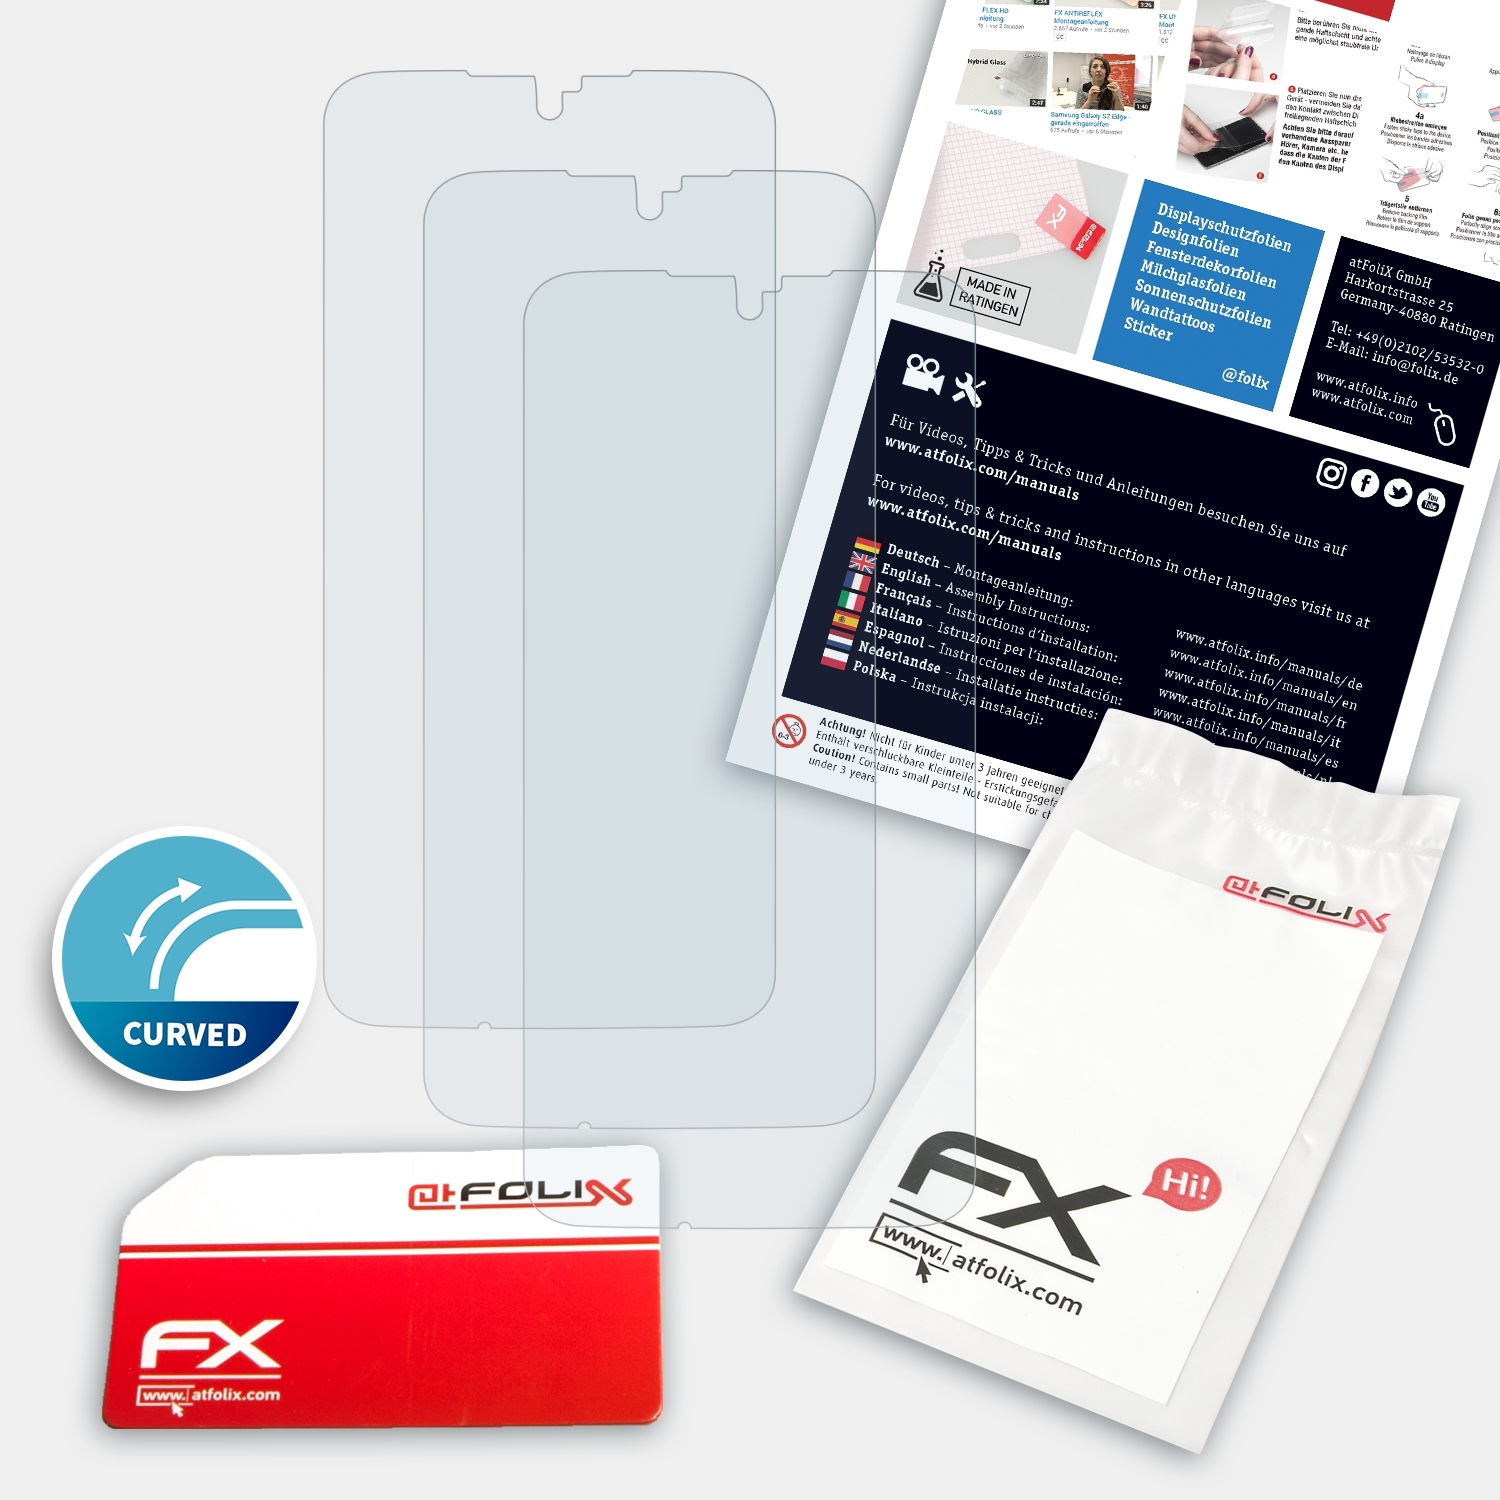 ATFOLIX 3x FX-ActiFleX Displayschutz(für T-Mobile Revvlry+)